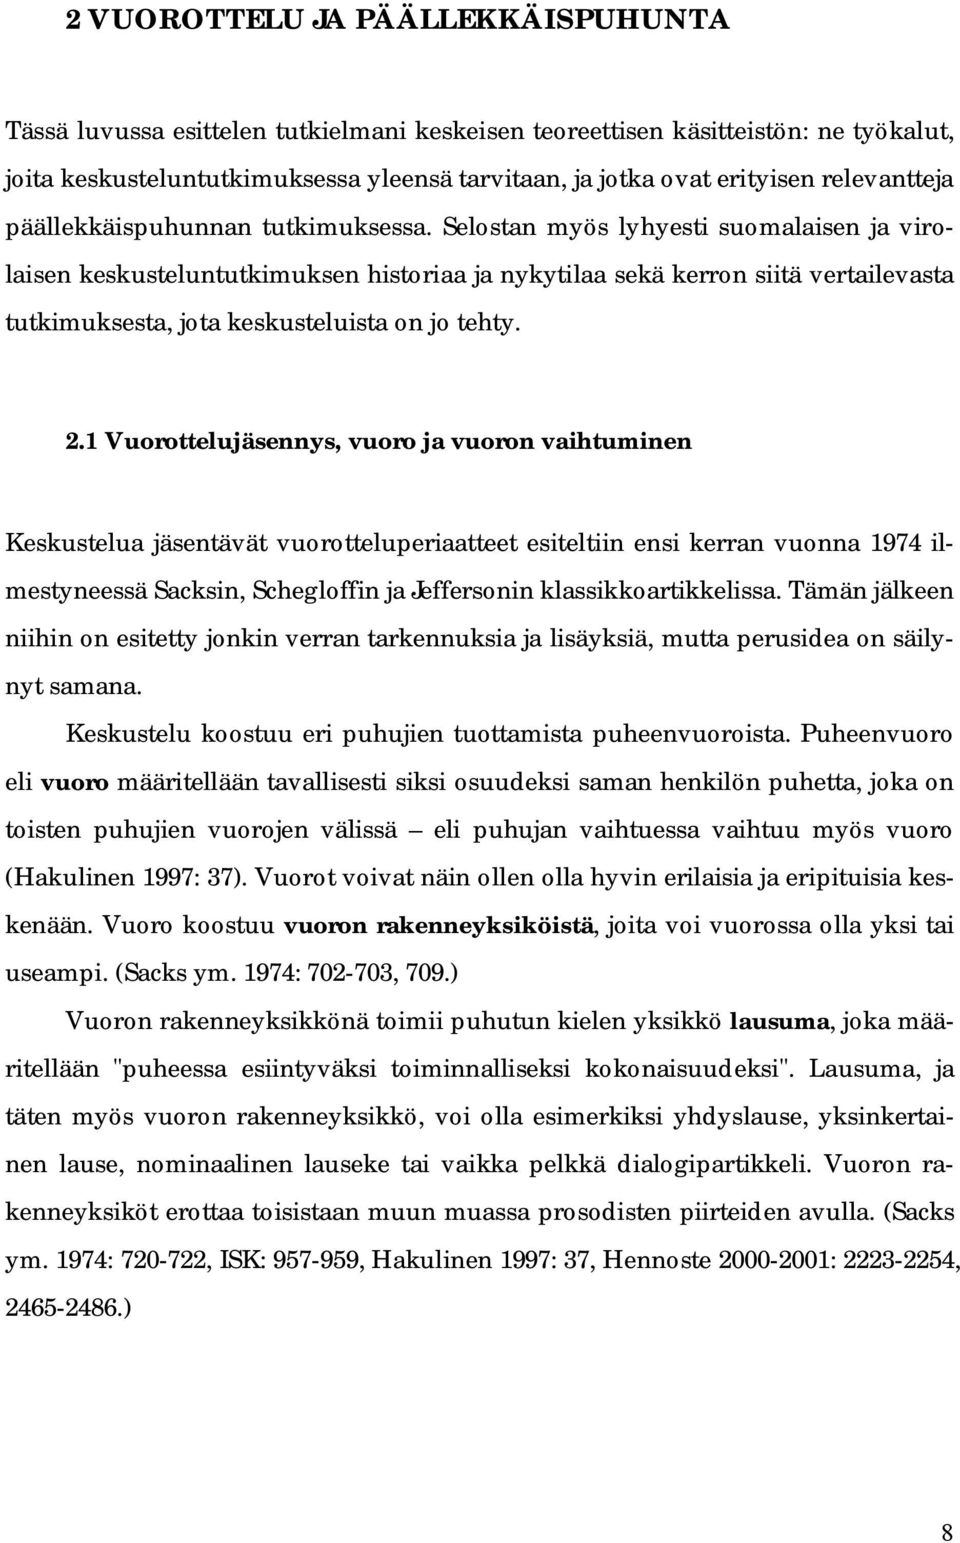 Selostan myös lyhyesti suomalaisen ja virolaisen keskusteluntutkimuksen historiaa ja nykytilaa sekä kerron siitä vertailevasta tutkimuksesta, jota keskusteluista on jo tehty. 2.